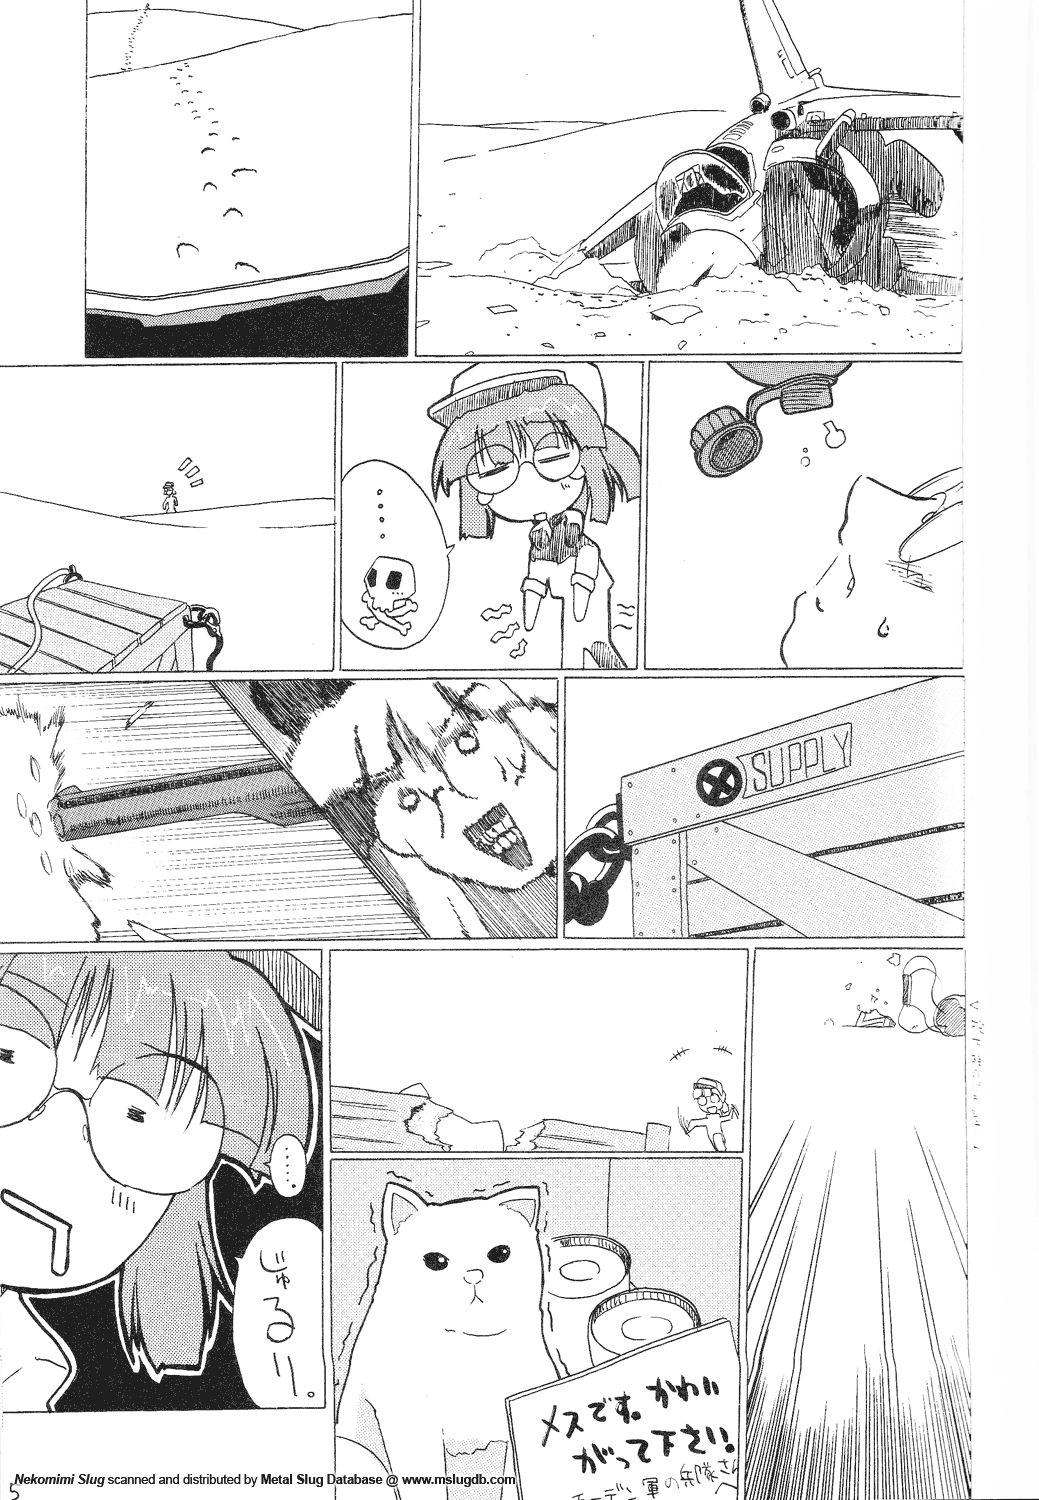 [GEWALT (EXCEL)] Nekomimi Slug (Metal Slug) page 5 full